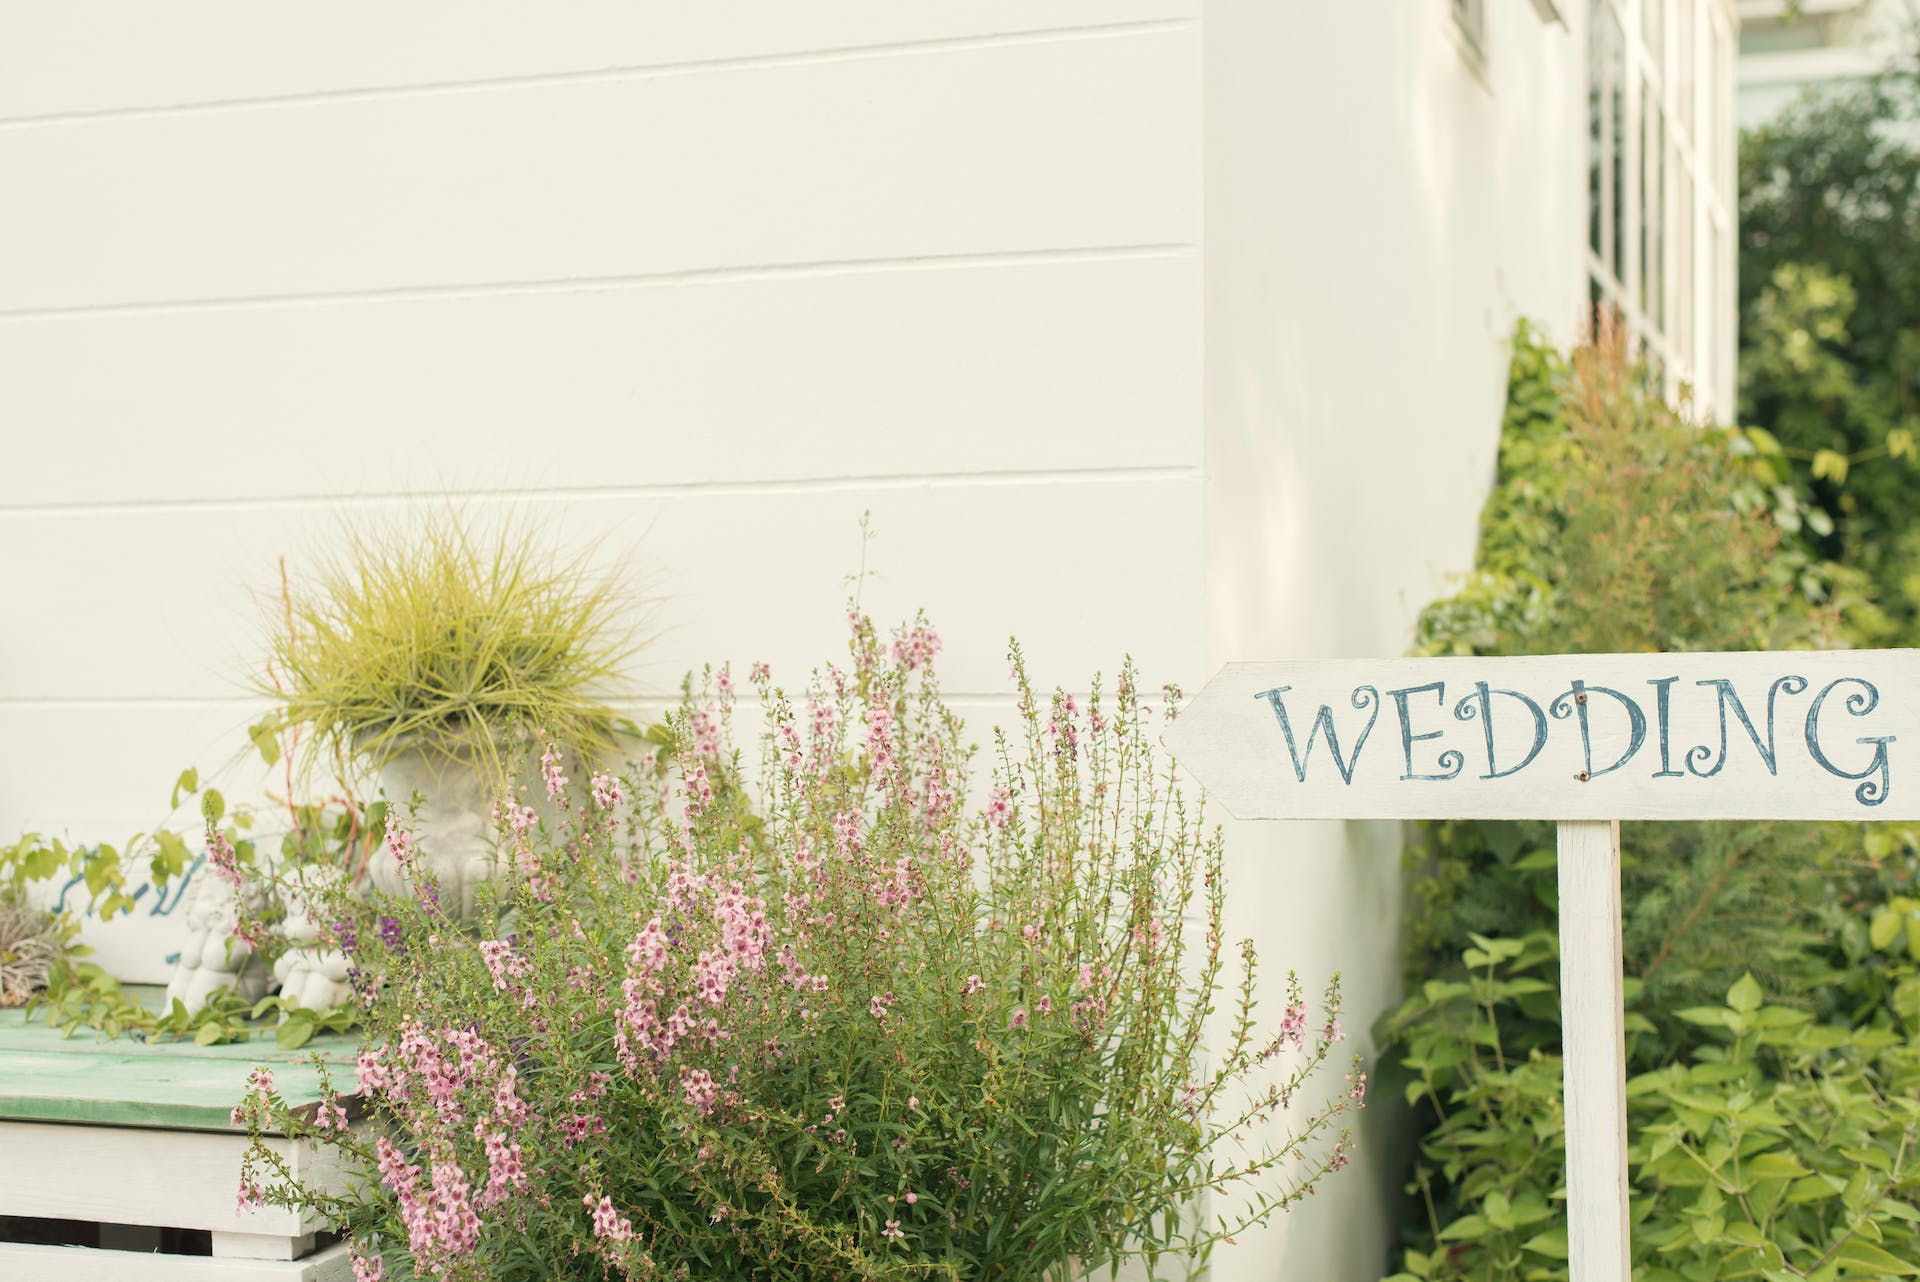 Une pancarte de mariage entourée de plantes | Source : Pexels